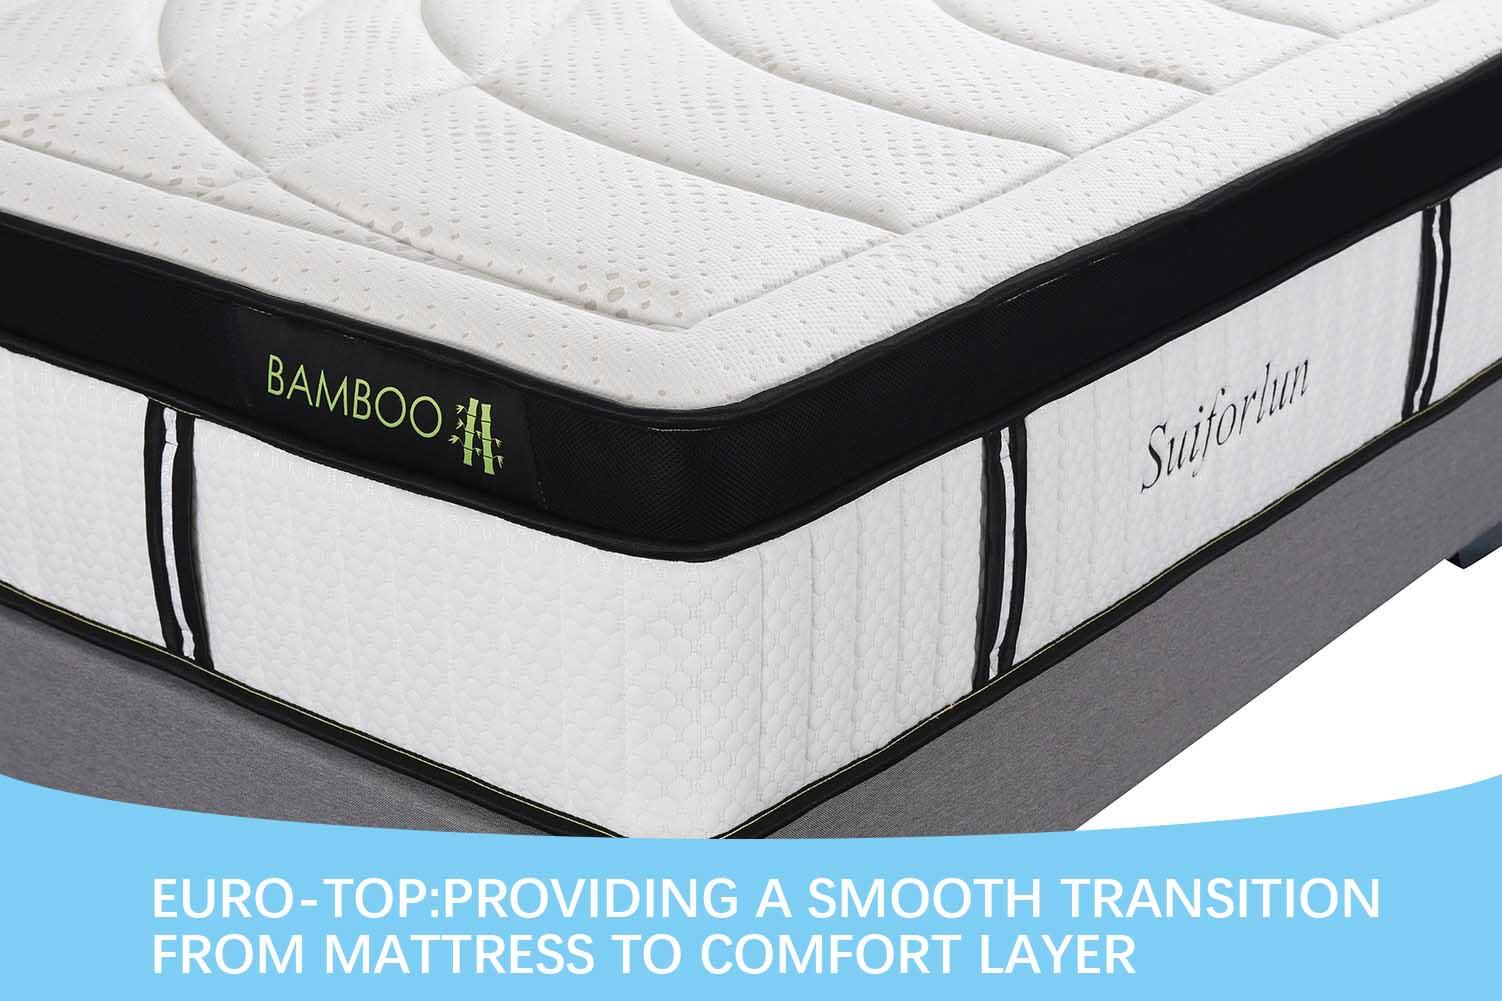 Suiforlun mattress white best hybrid mattress customized for hotel